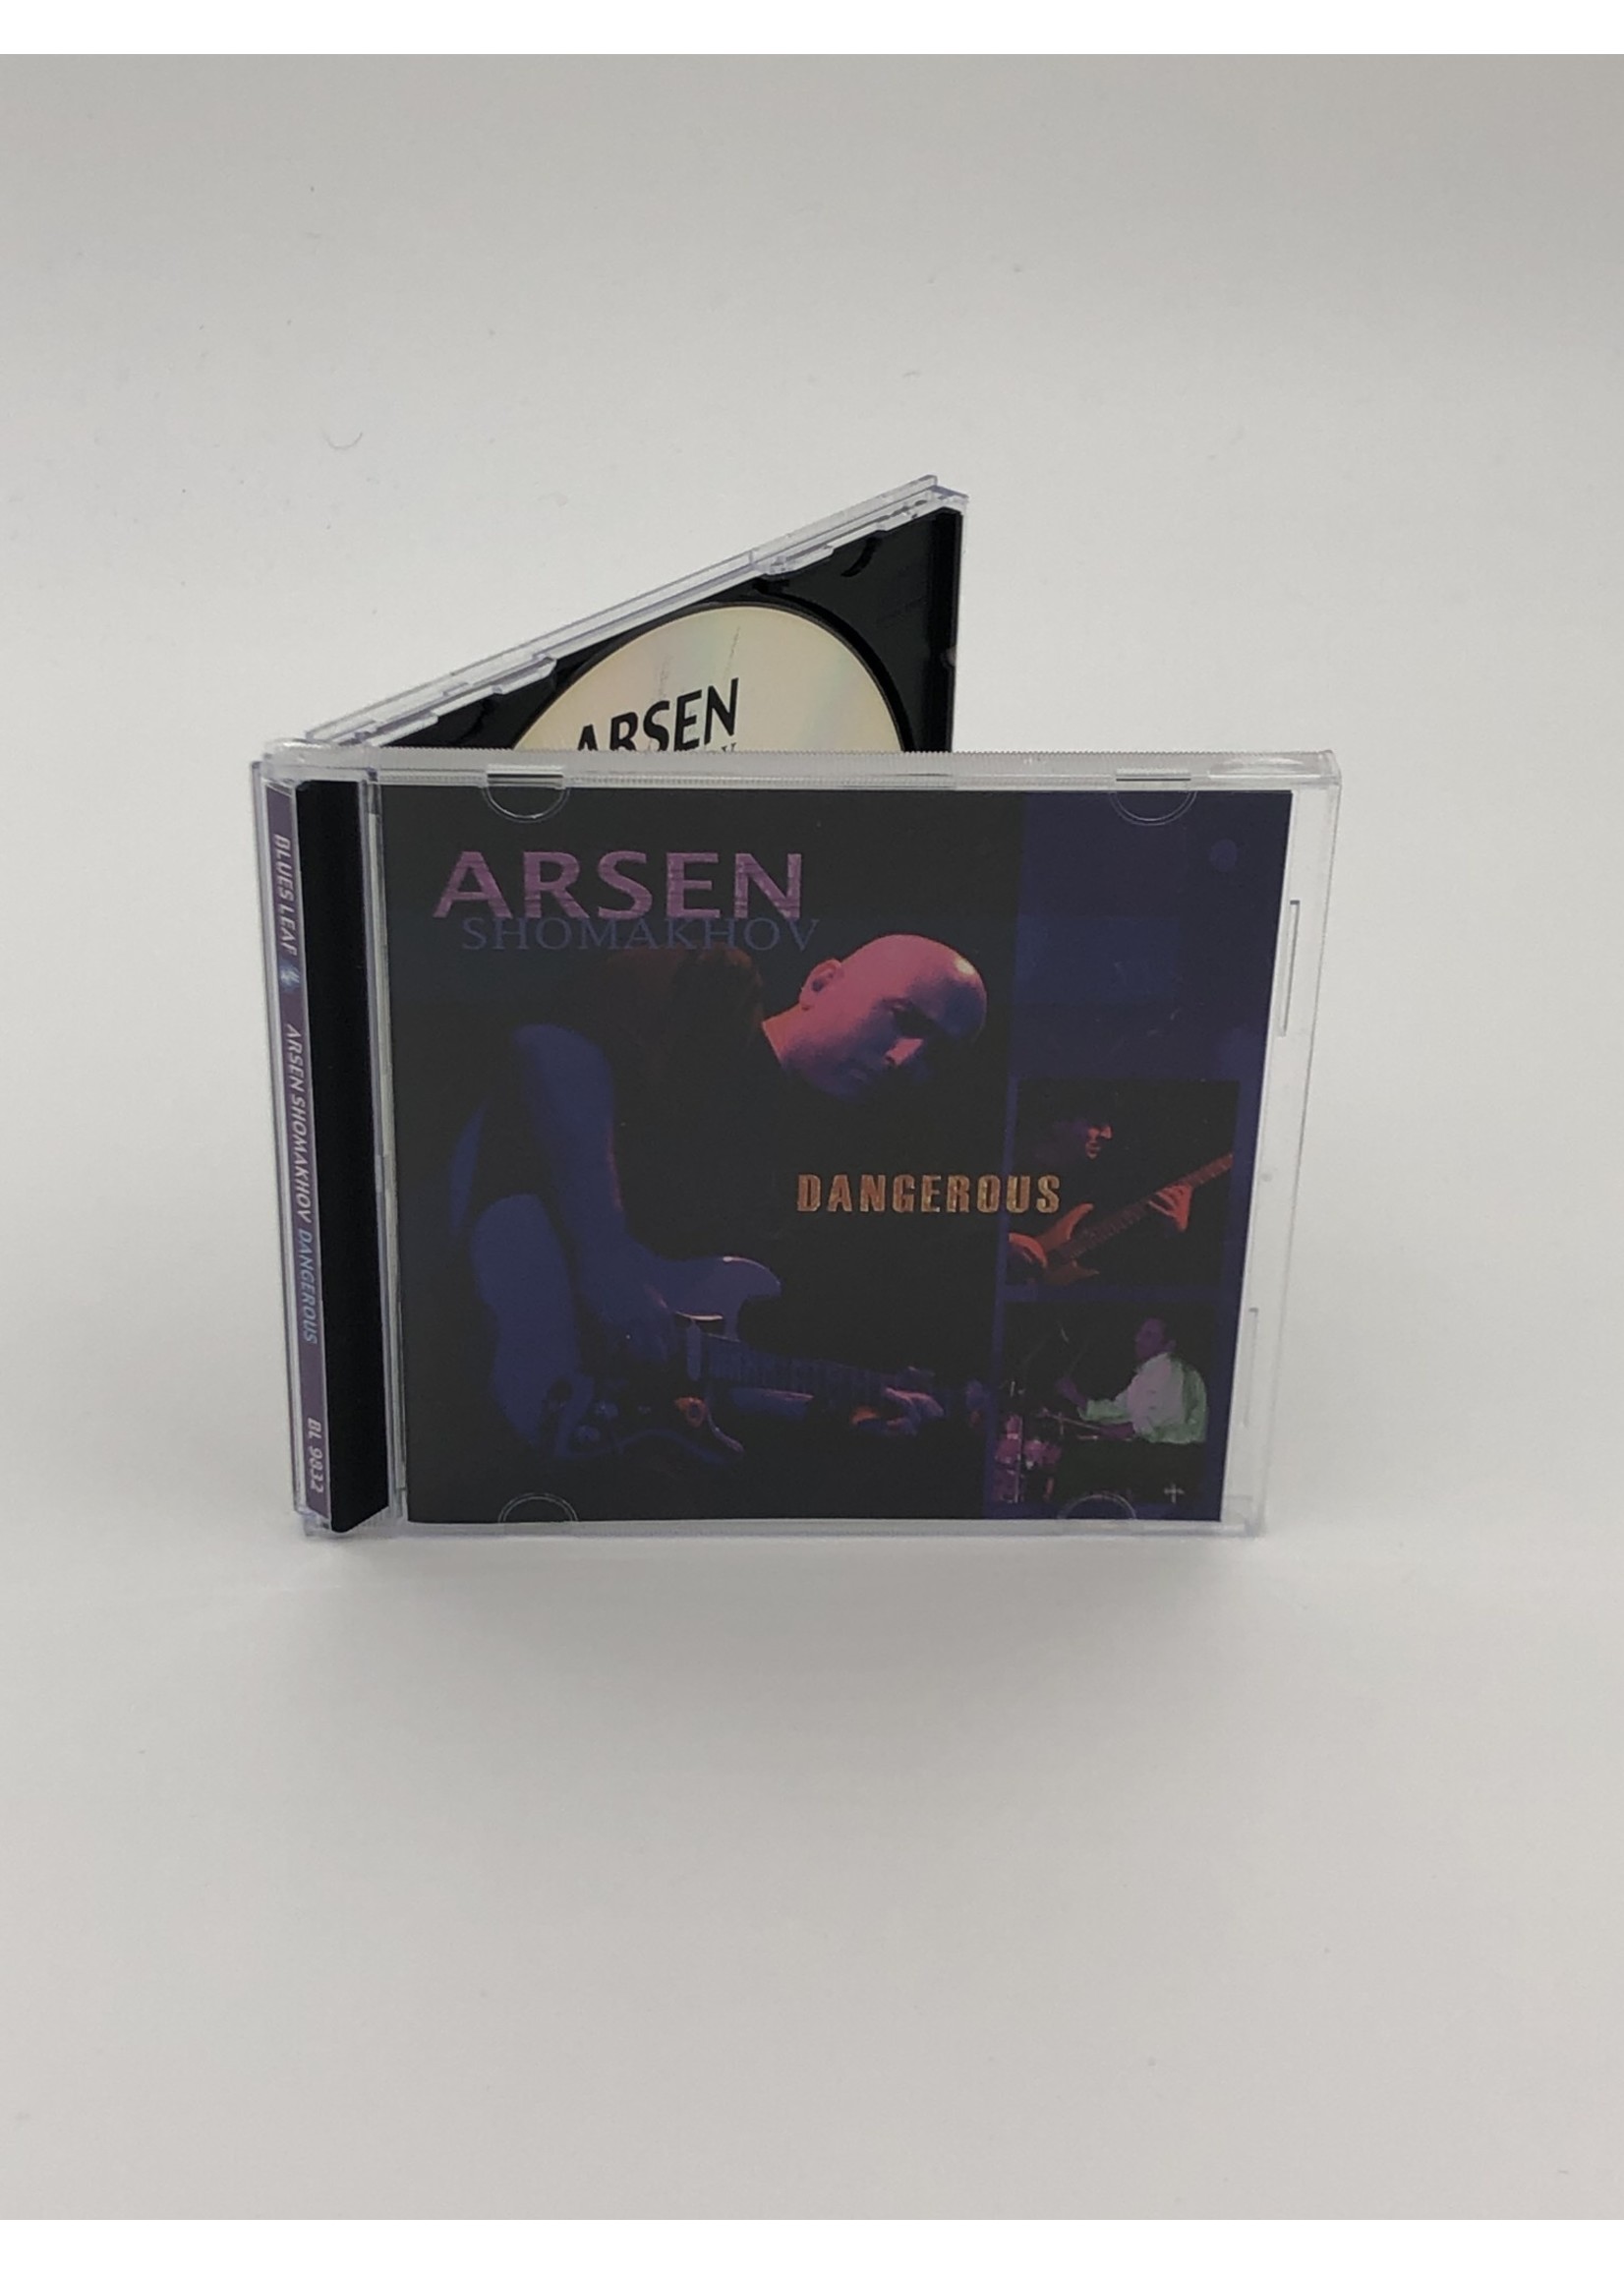 CD Arsen Shomakhov Dangerous CD